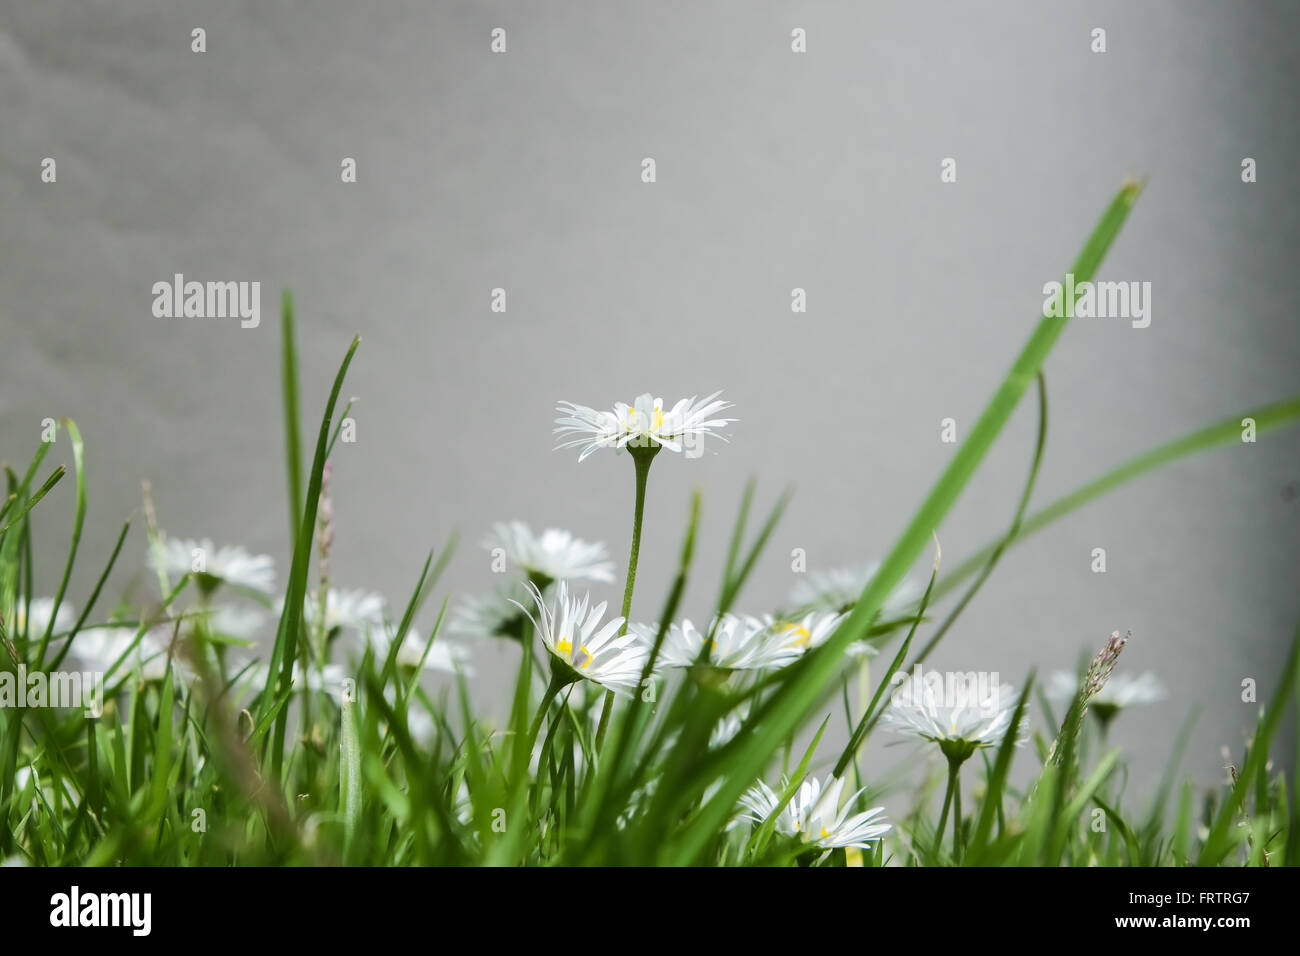 Gruppe von Gänseblümchen im Rasen, fotografiert im Rasen Ebene Stockfoto